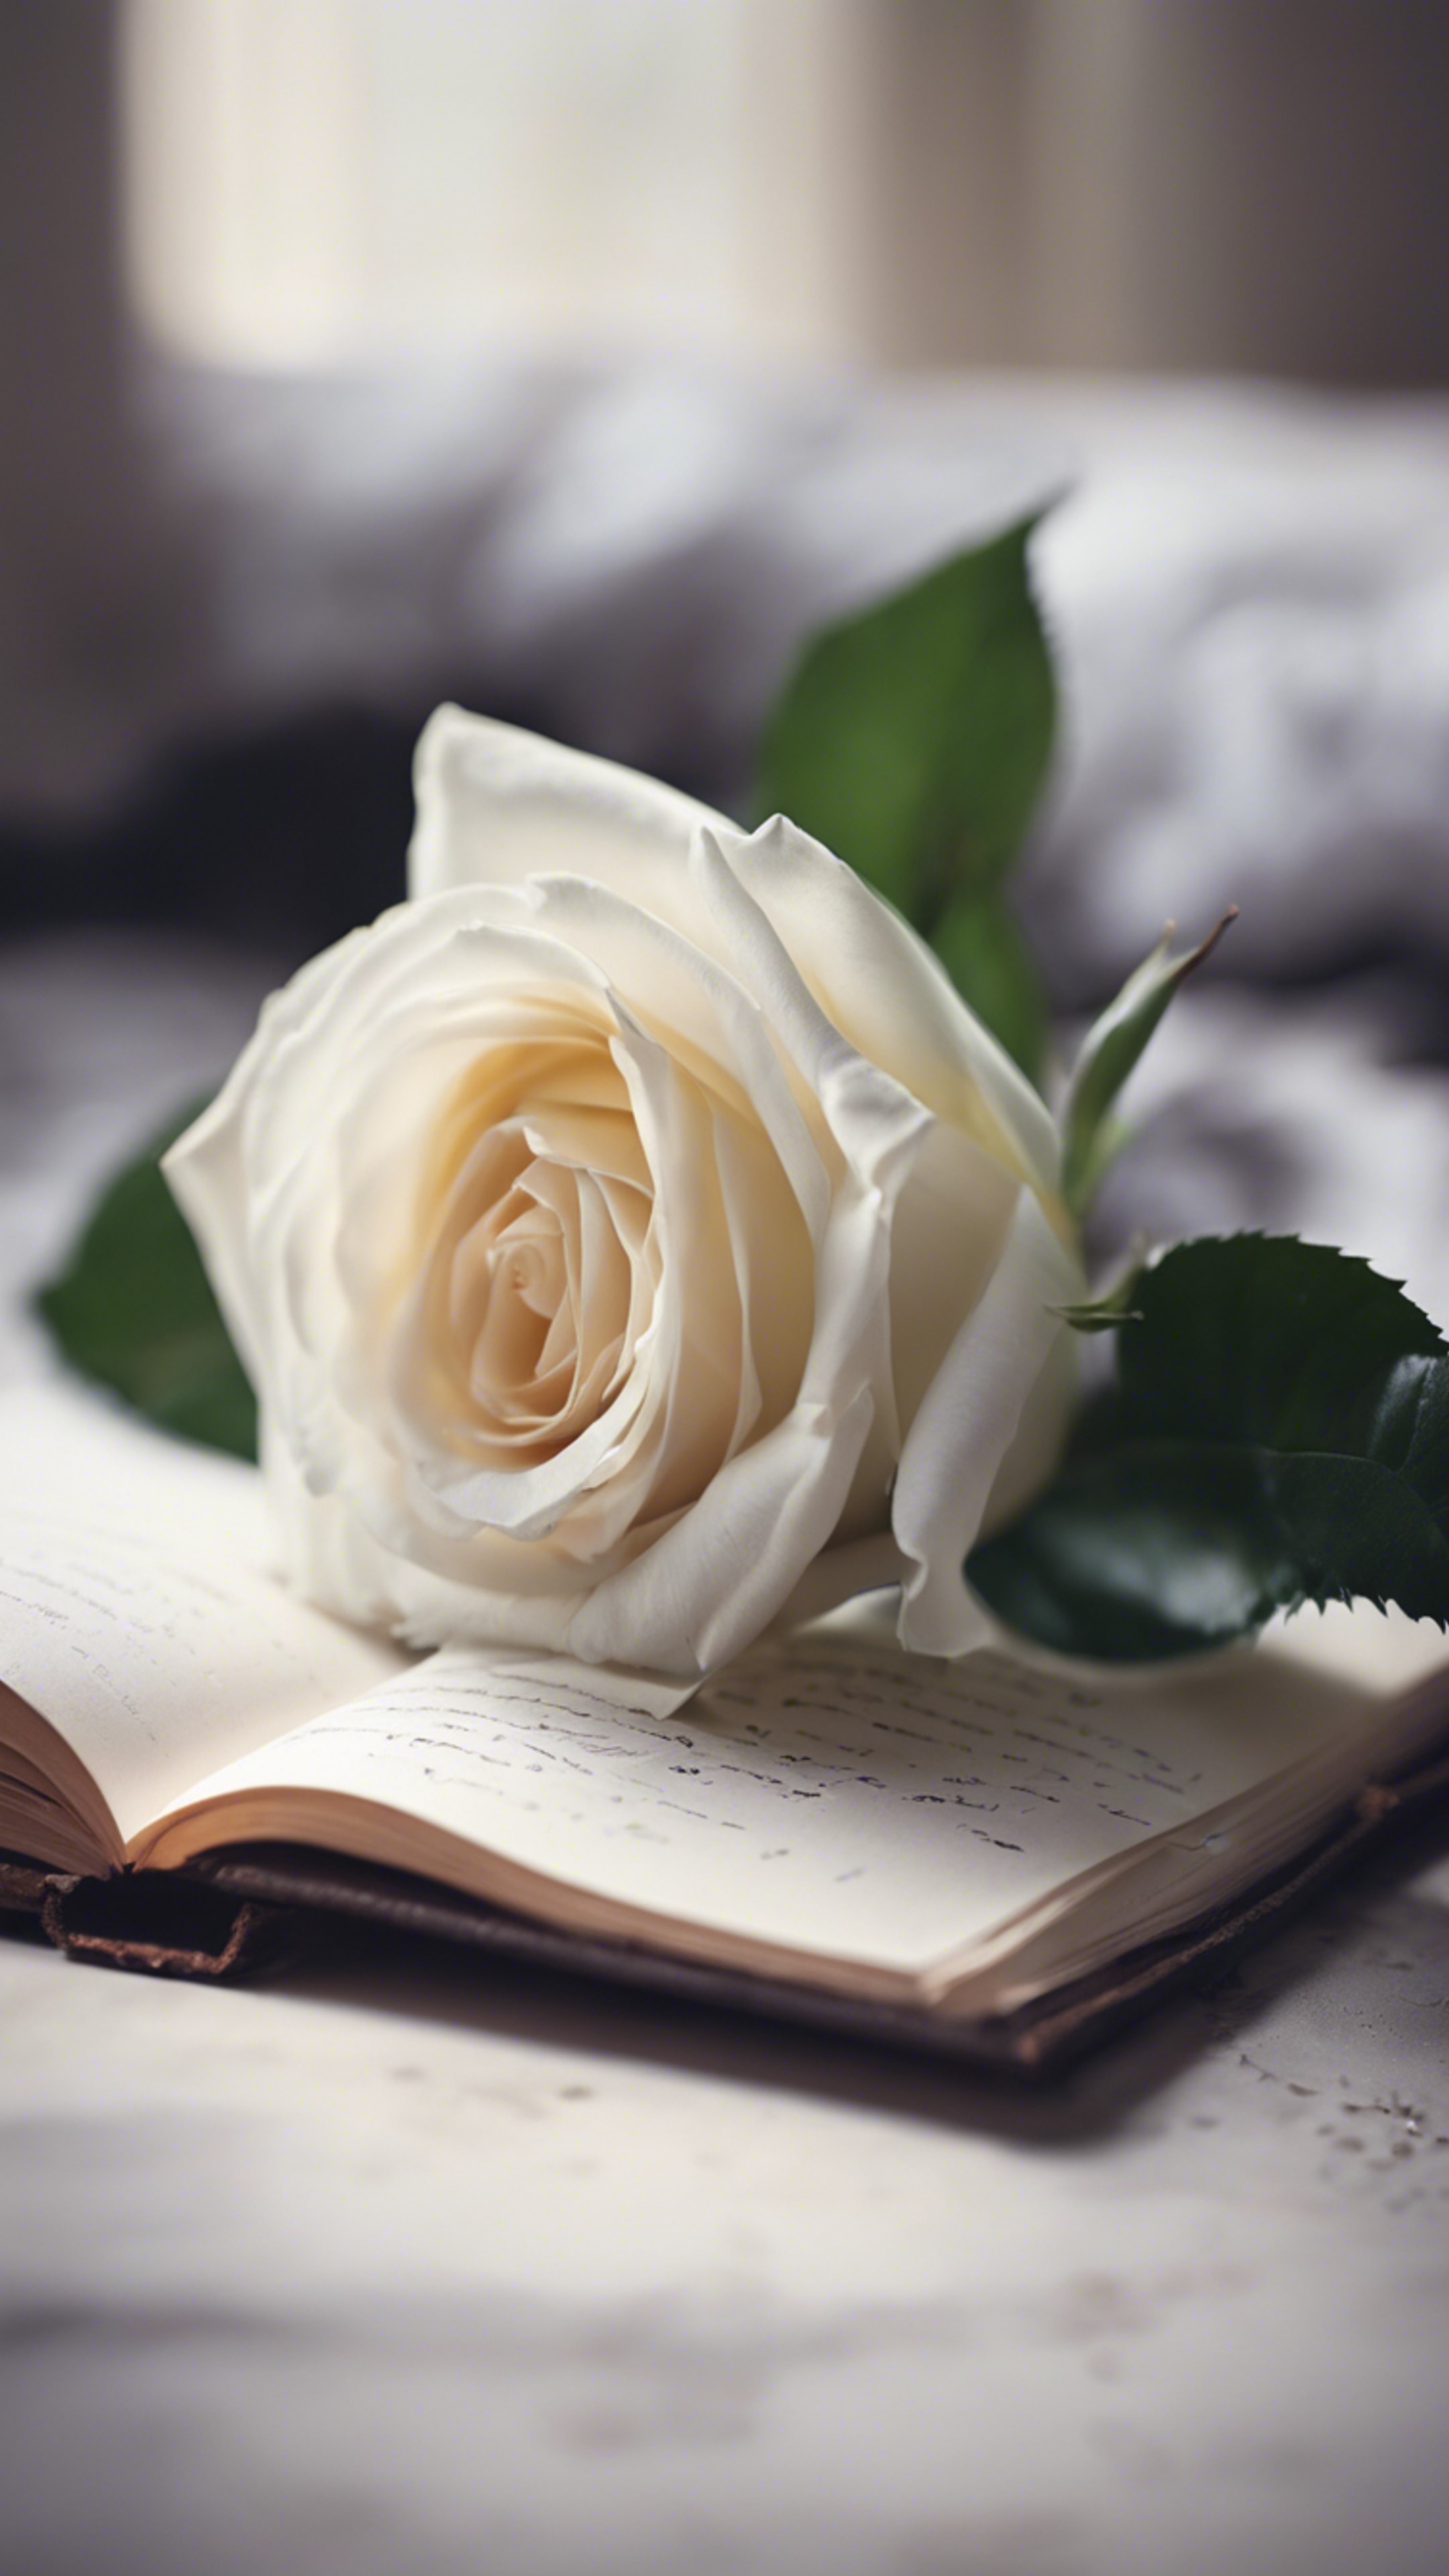 A handwritten confession of love adorned by a fresh, white rose. Tapet[ca91da3bae694a85a8d6]